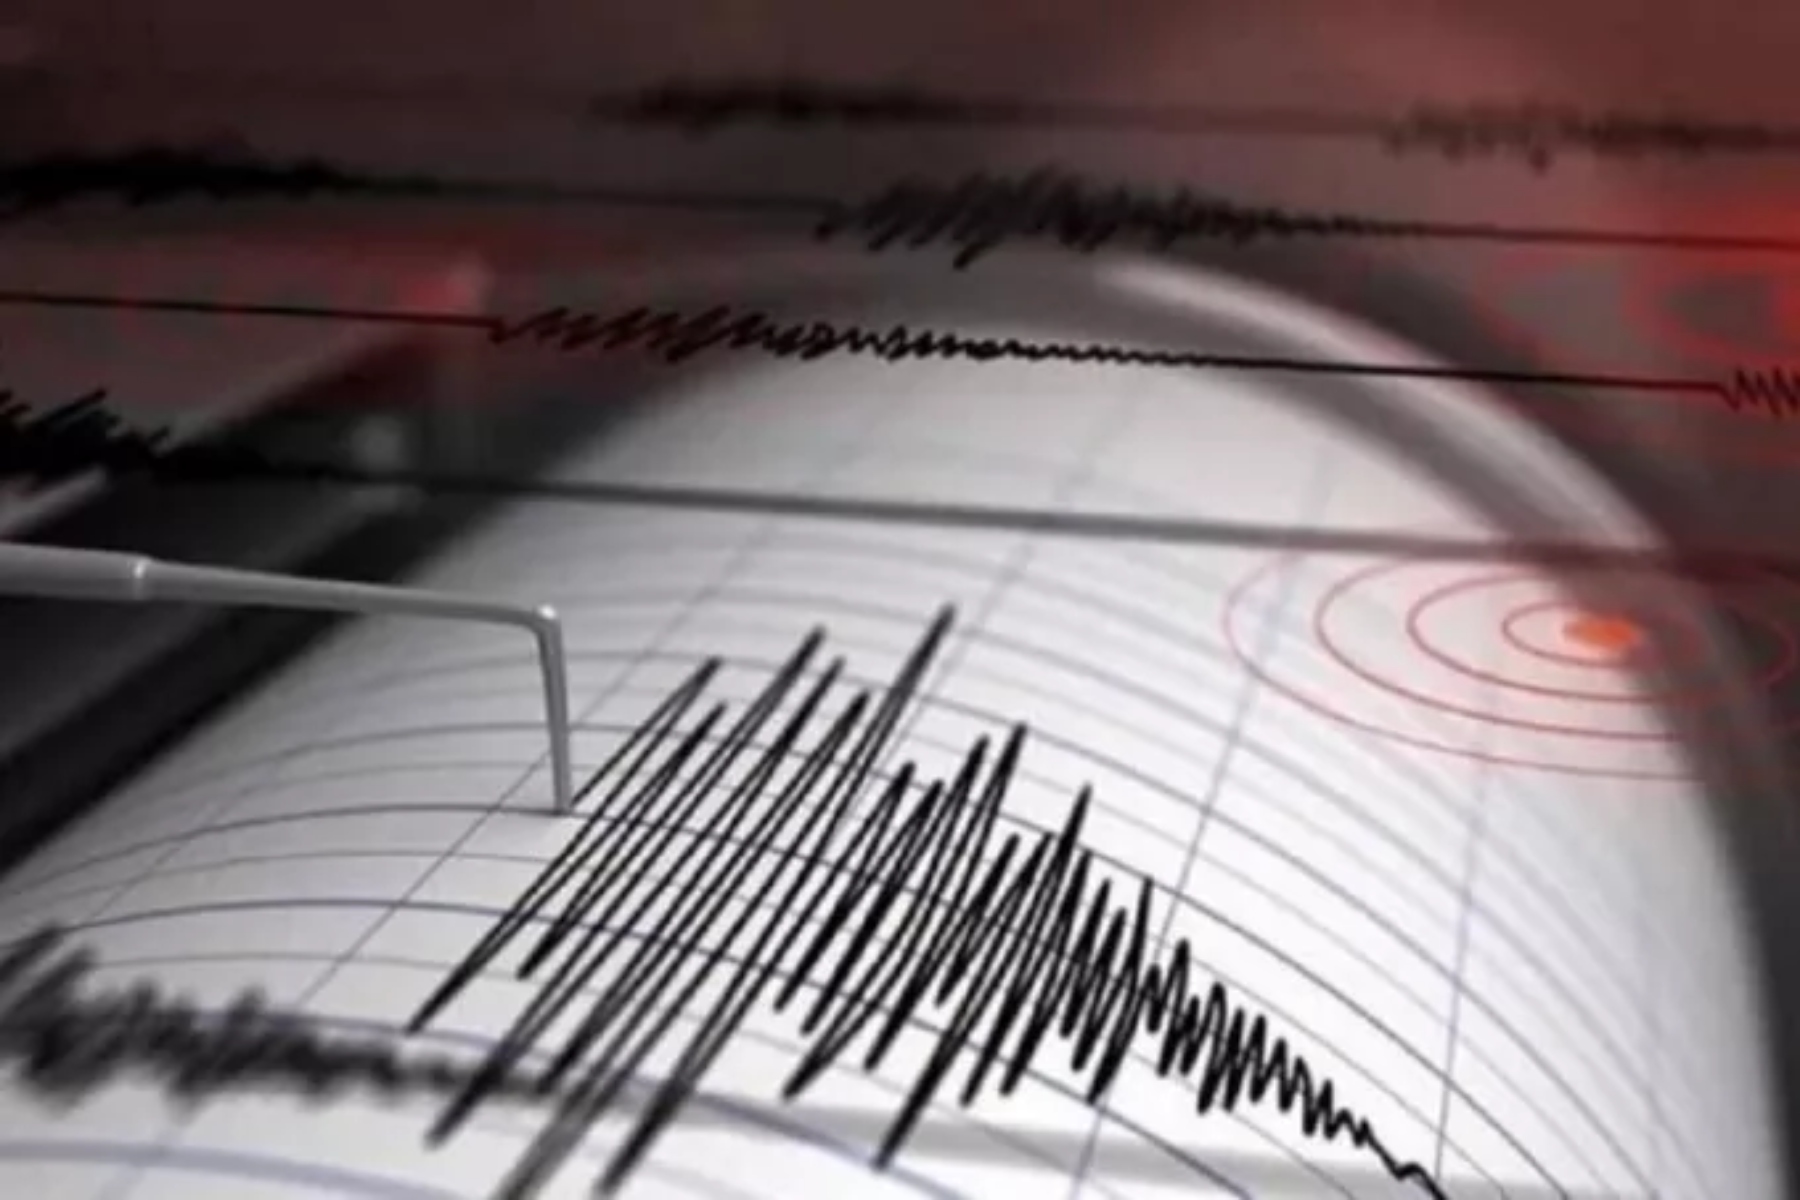 Σεισμός τώρα: Ισχυρή σεισμική δόνηση 5,1 ρίχτερ στην Εύβοια